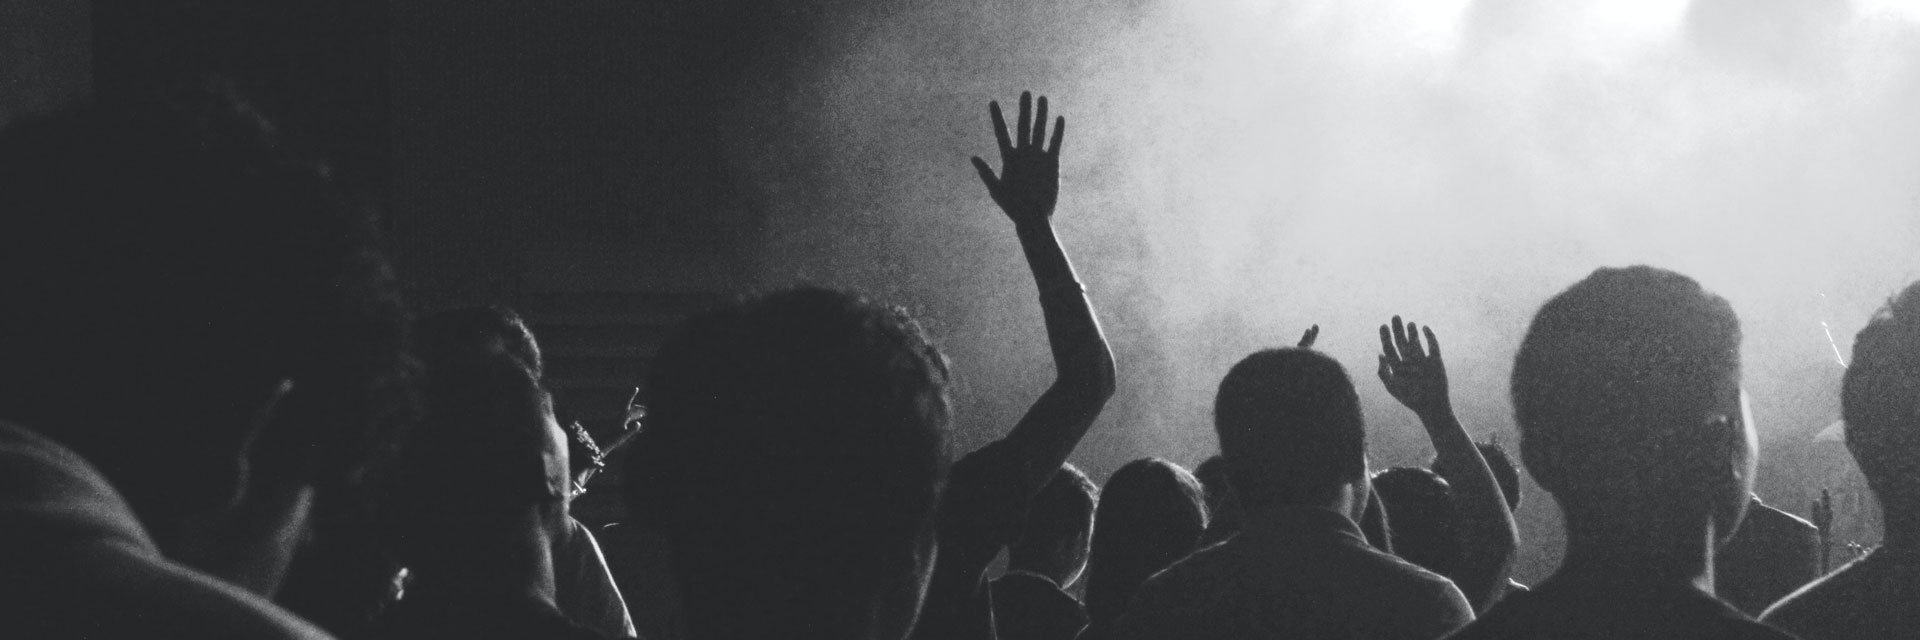 Besucherinnen und Besucher auf einem Konzert. Alle Menschen sind von hinten zu sehen, eine Person hält die Hand beim Tanzen nach oben.